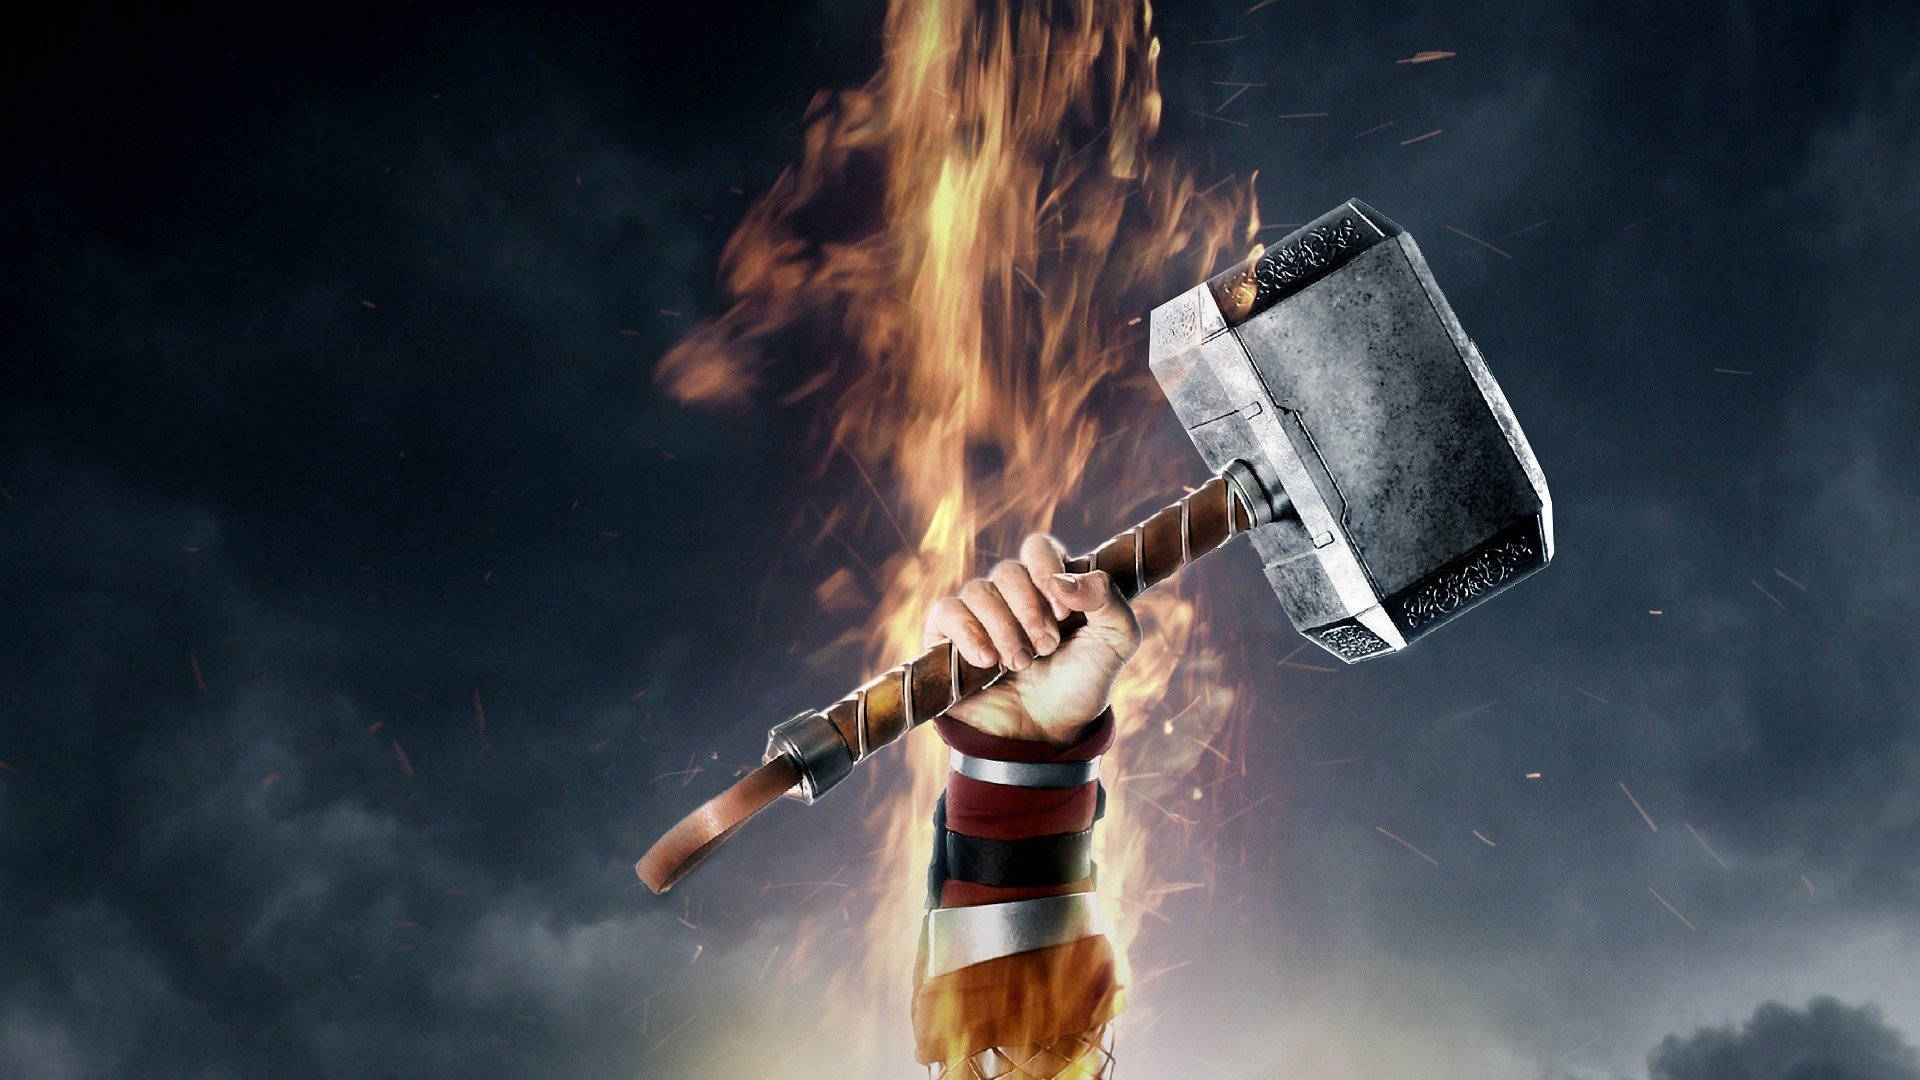 Thor's ikoniske hammer Mjolnir. Wallpaper